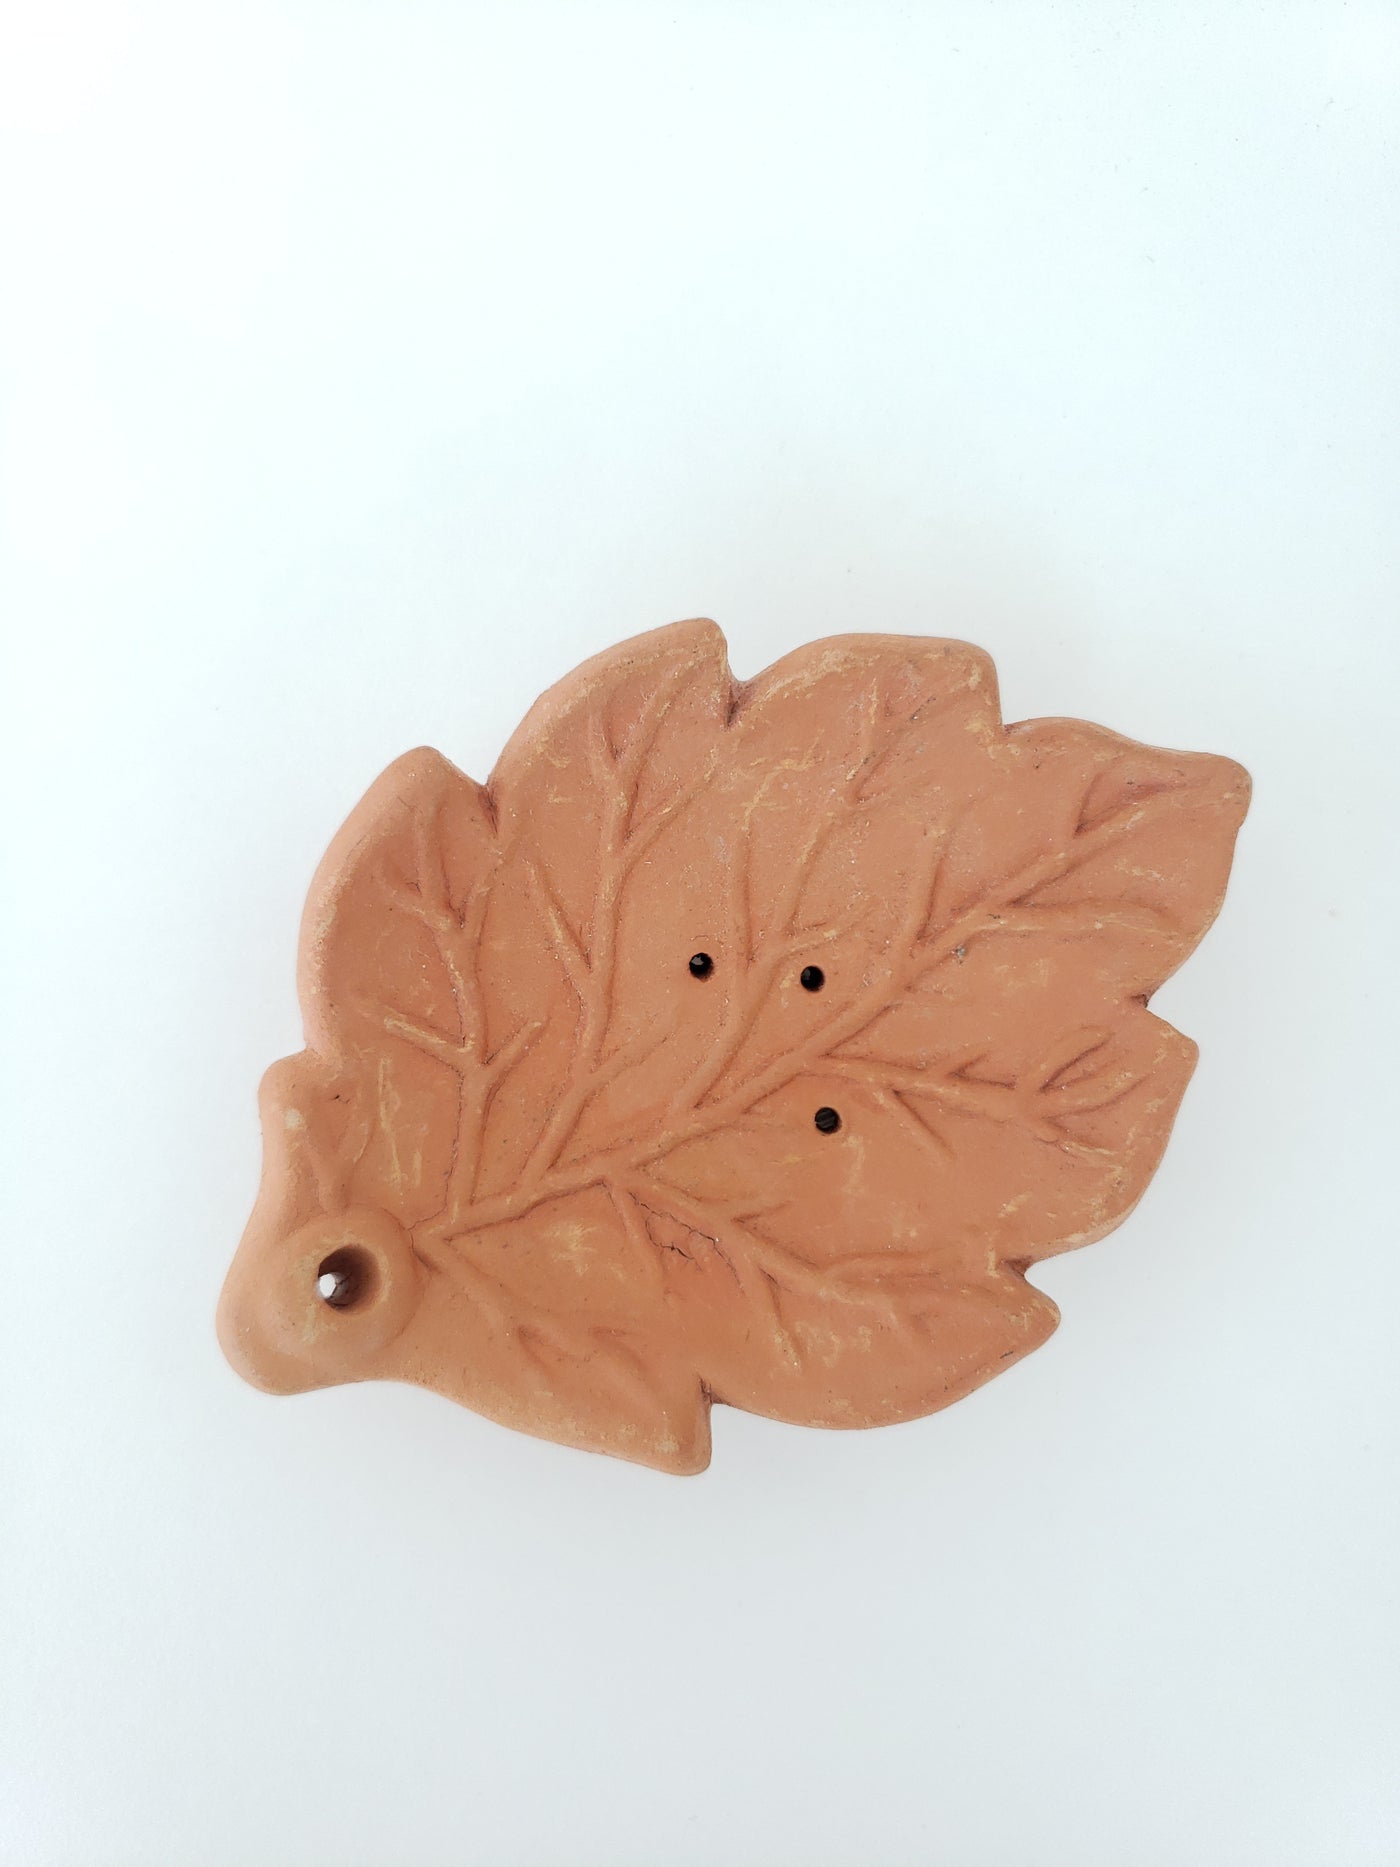 Incense burner: Leaf Shaped